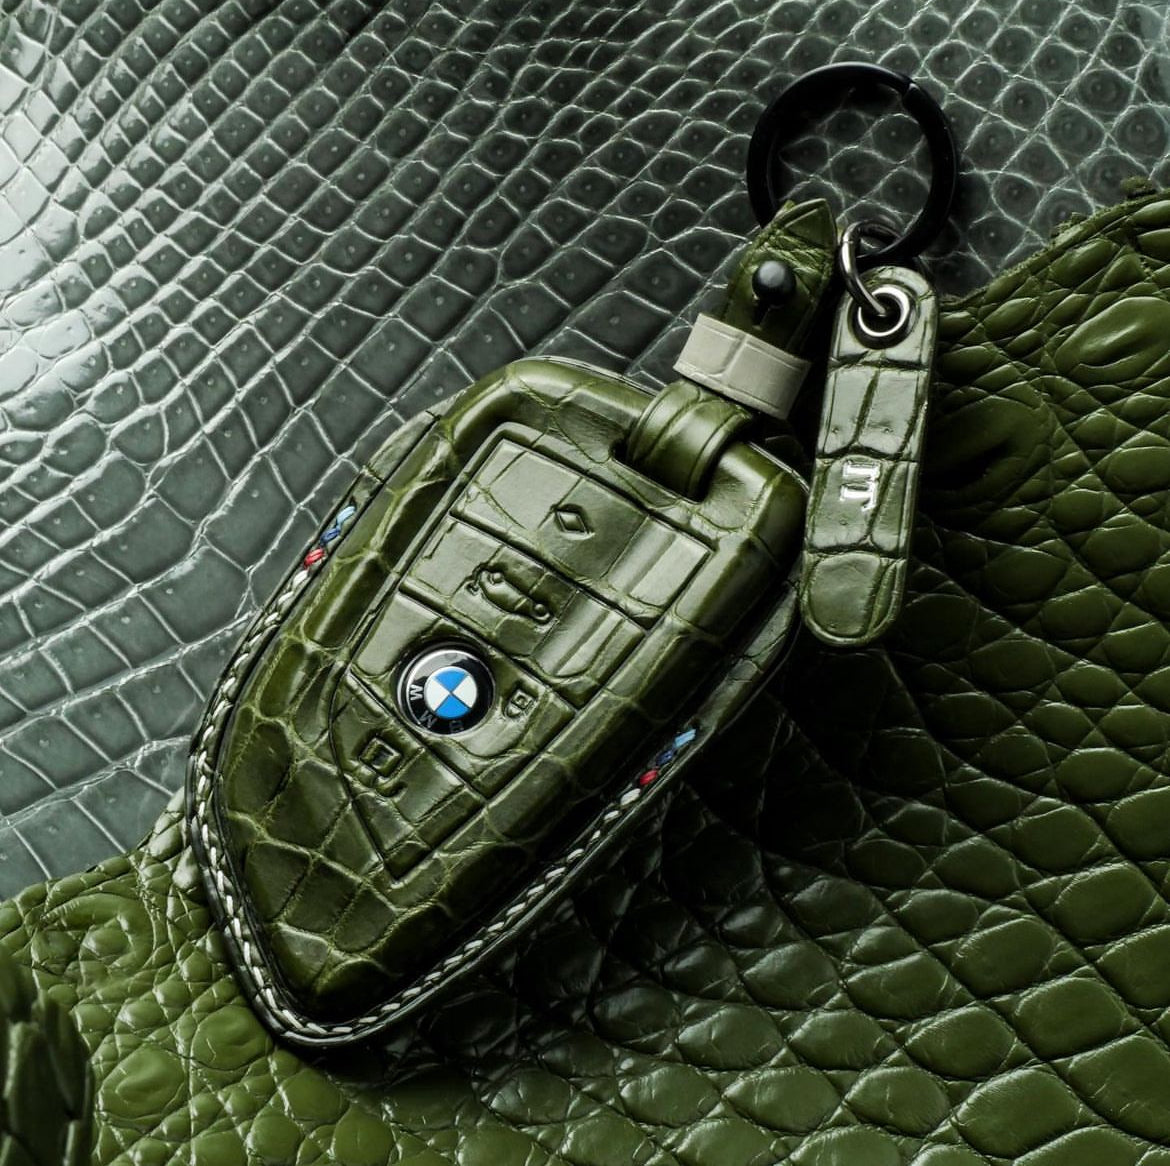 BMW 鑰匙圈保護套 1 型 - 客製化您的